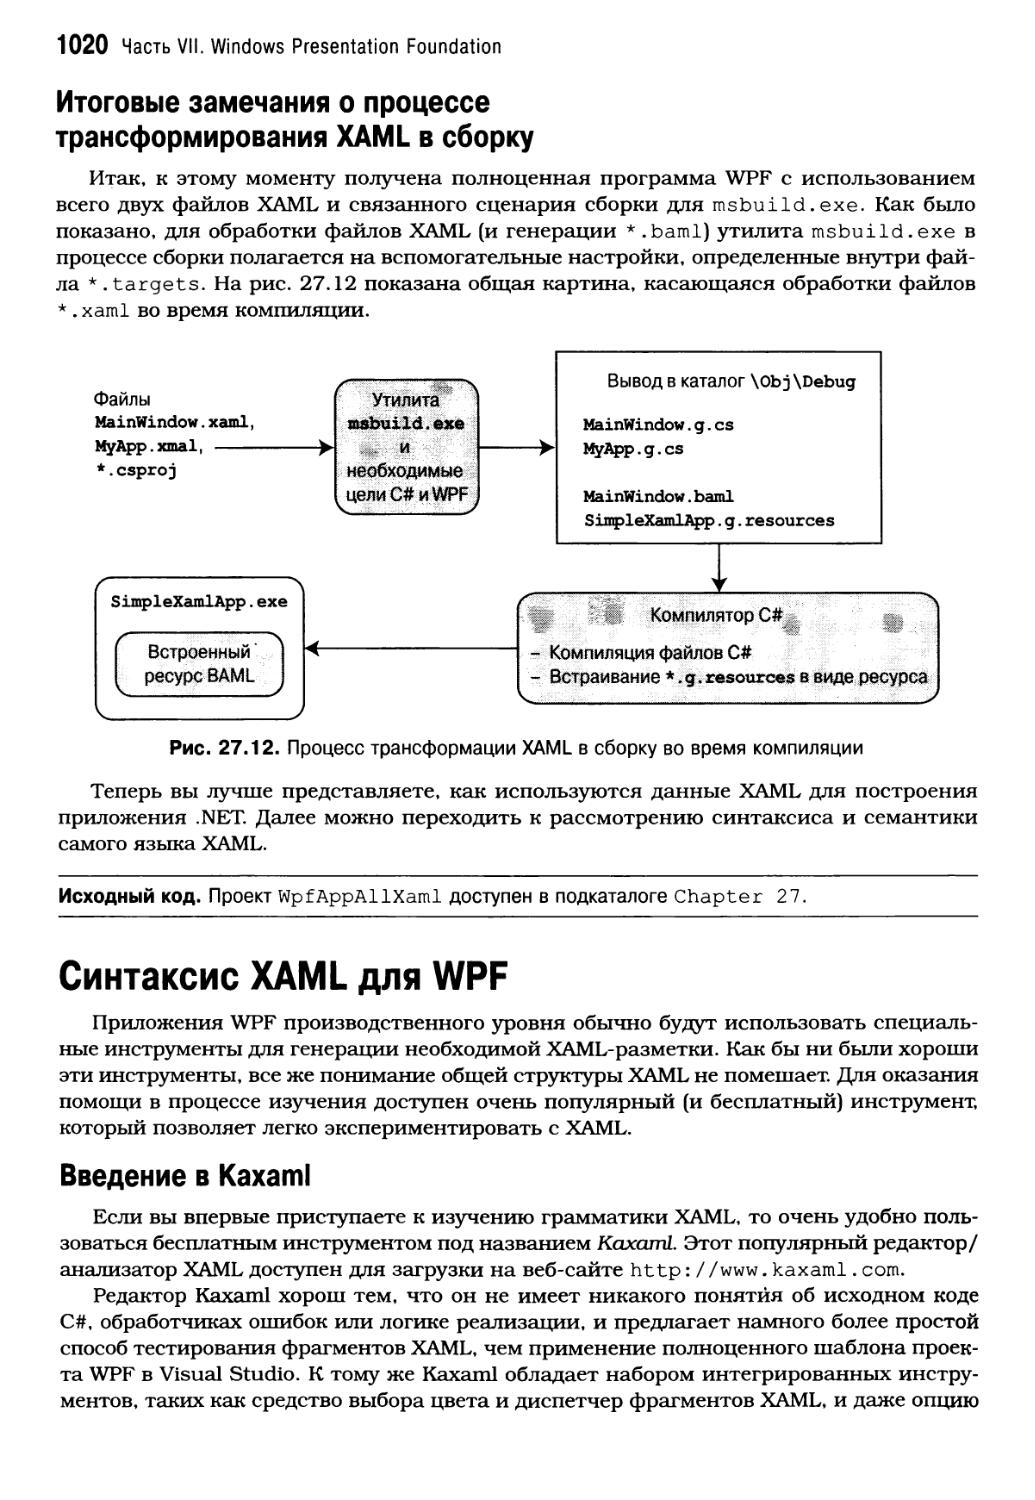 Итоговые замечания о процессе трансформирования XAML в сборку
Синтаксис XAML для WPF